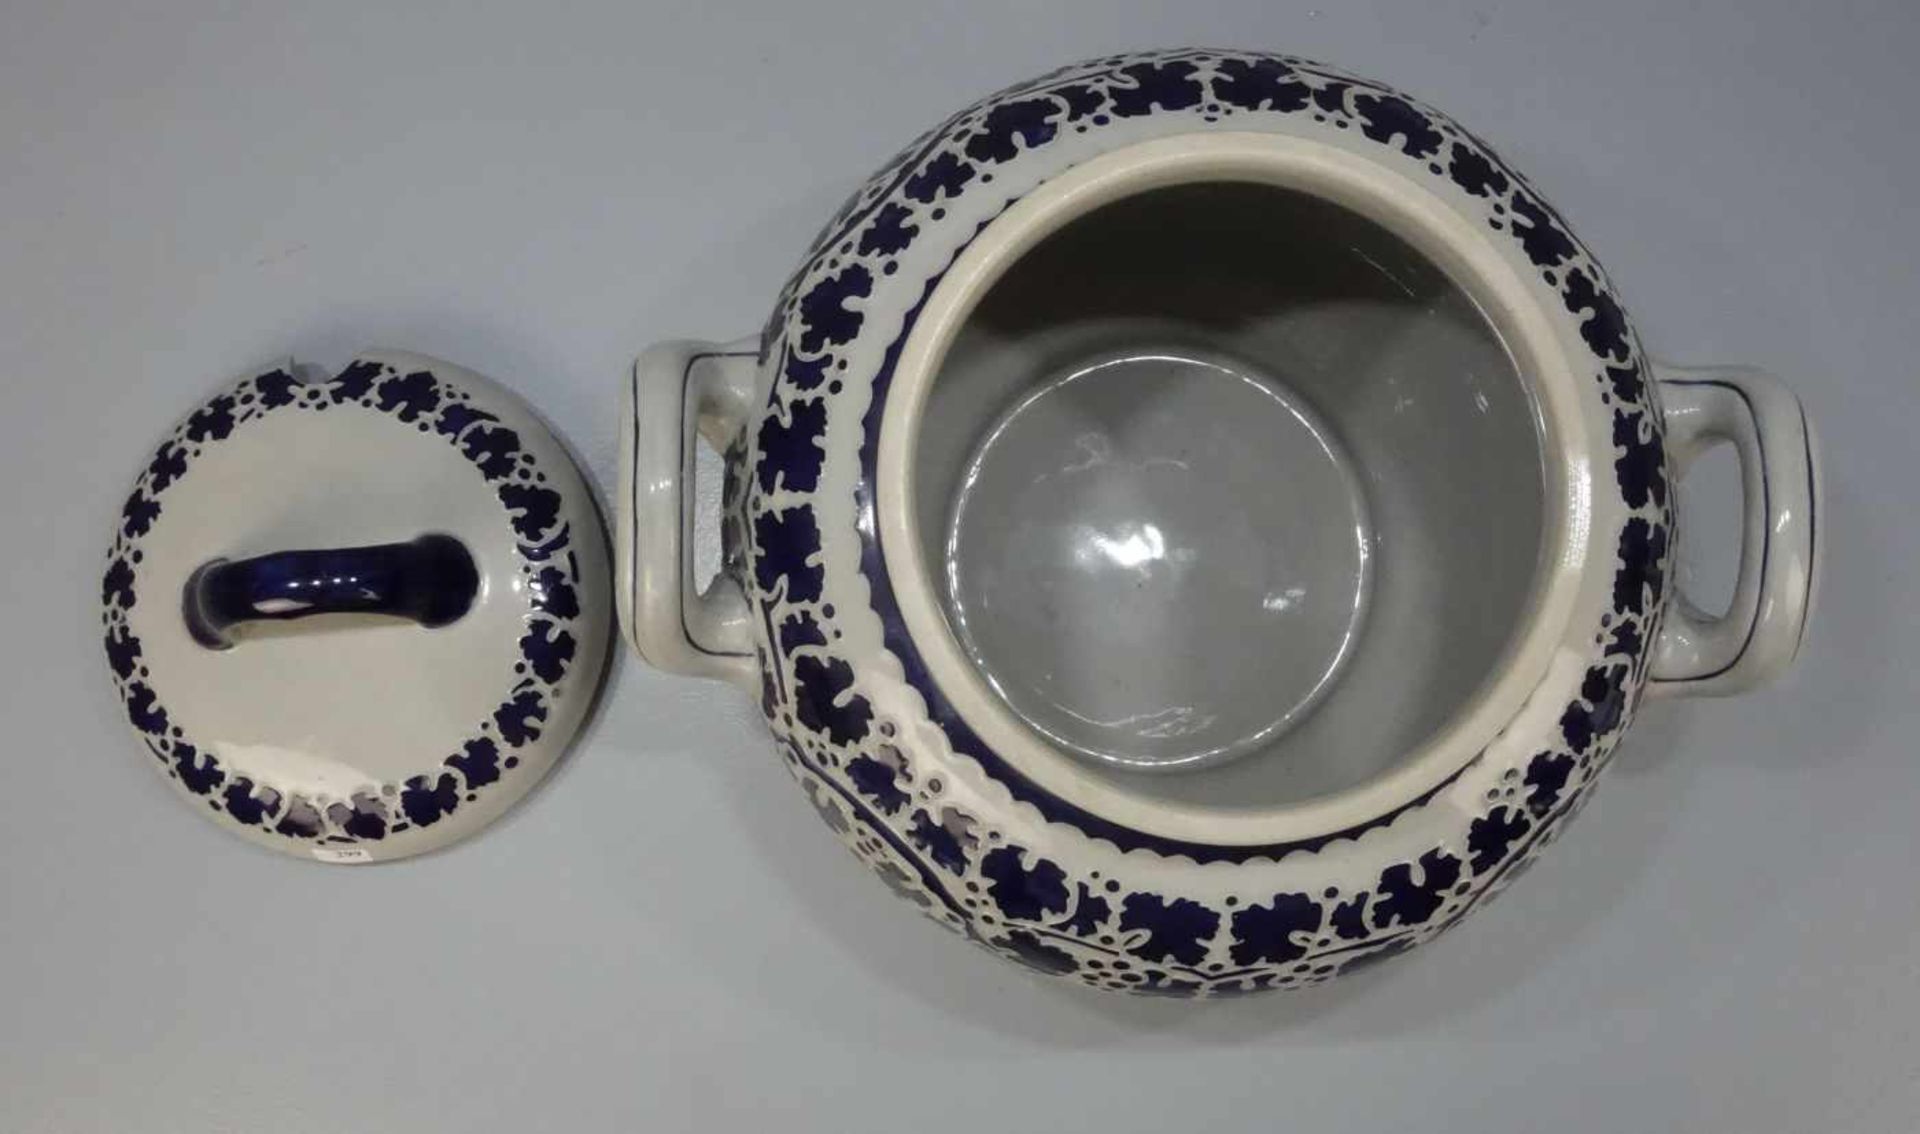 JUGENDSTIL - BOWLE / art nouveau ceramic punch bowl, Keramik, Manufaktur Reinhold Merkelbach, - Image 2 of 3